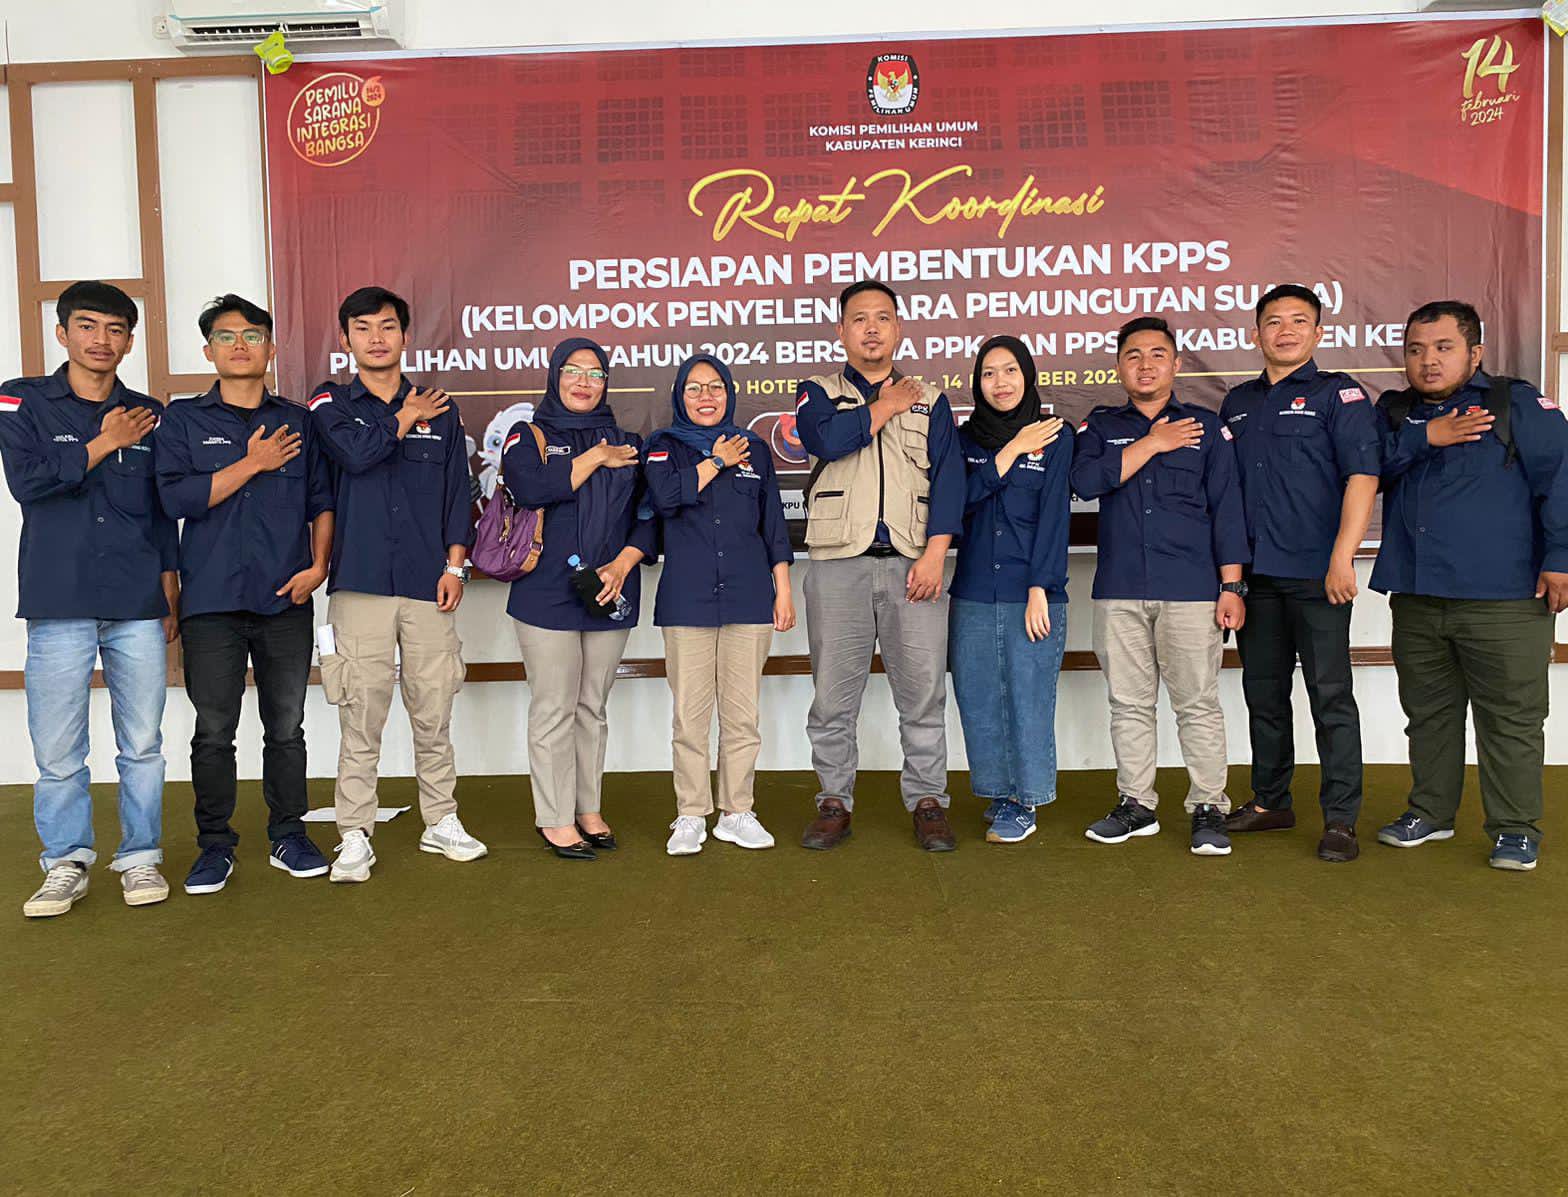 Menuju pemilu yang damai : PPK Danau Kerinci bersama Ketua PPS se Kecamatan Danau Kerinci hadiri Rakor persiapan Pembentukan KPPS.